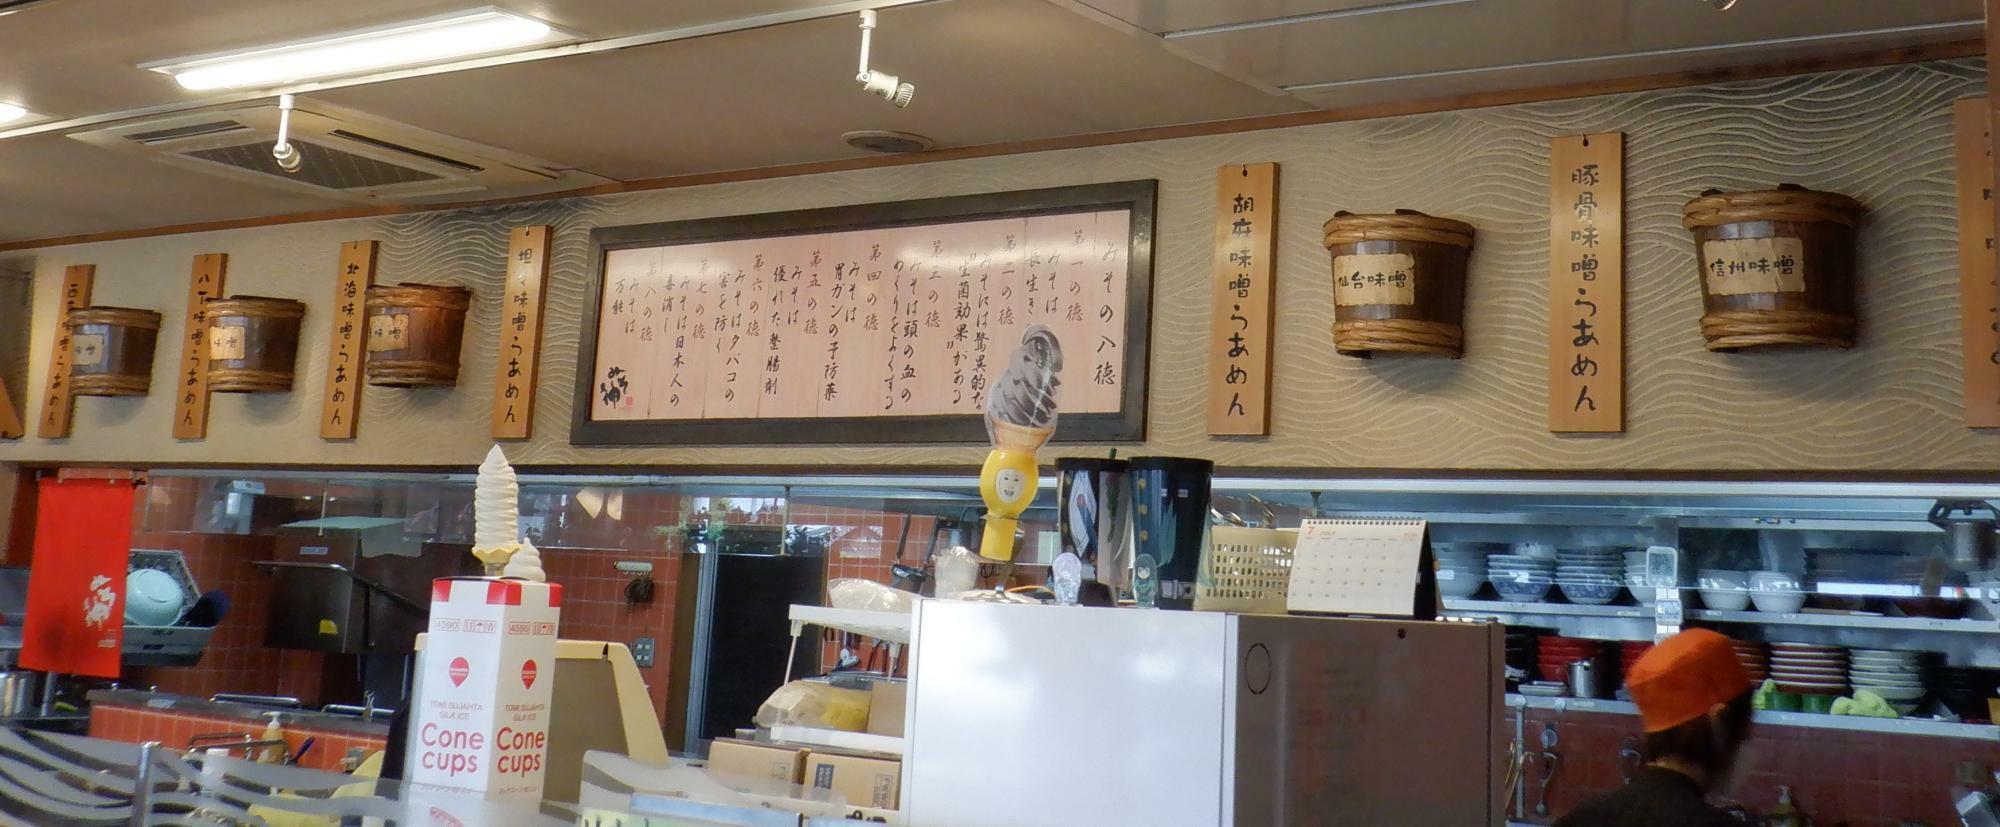 味噌の樽を模した飾りが調理場上部の壁に。全国の味噌を使うことへのこだわりを感じます。